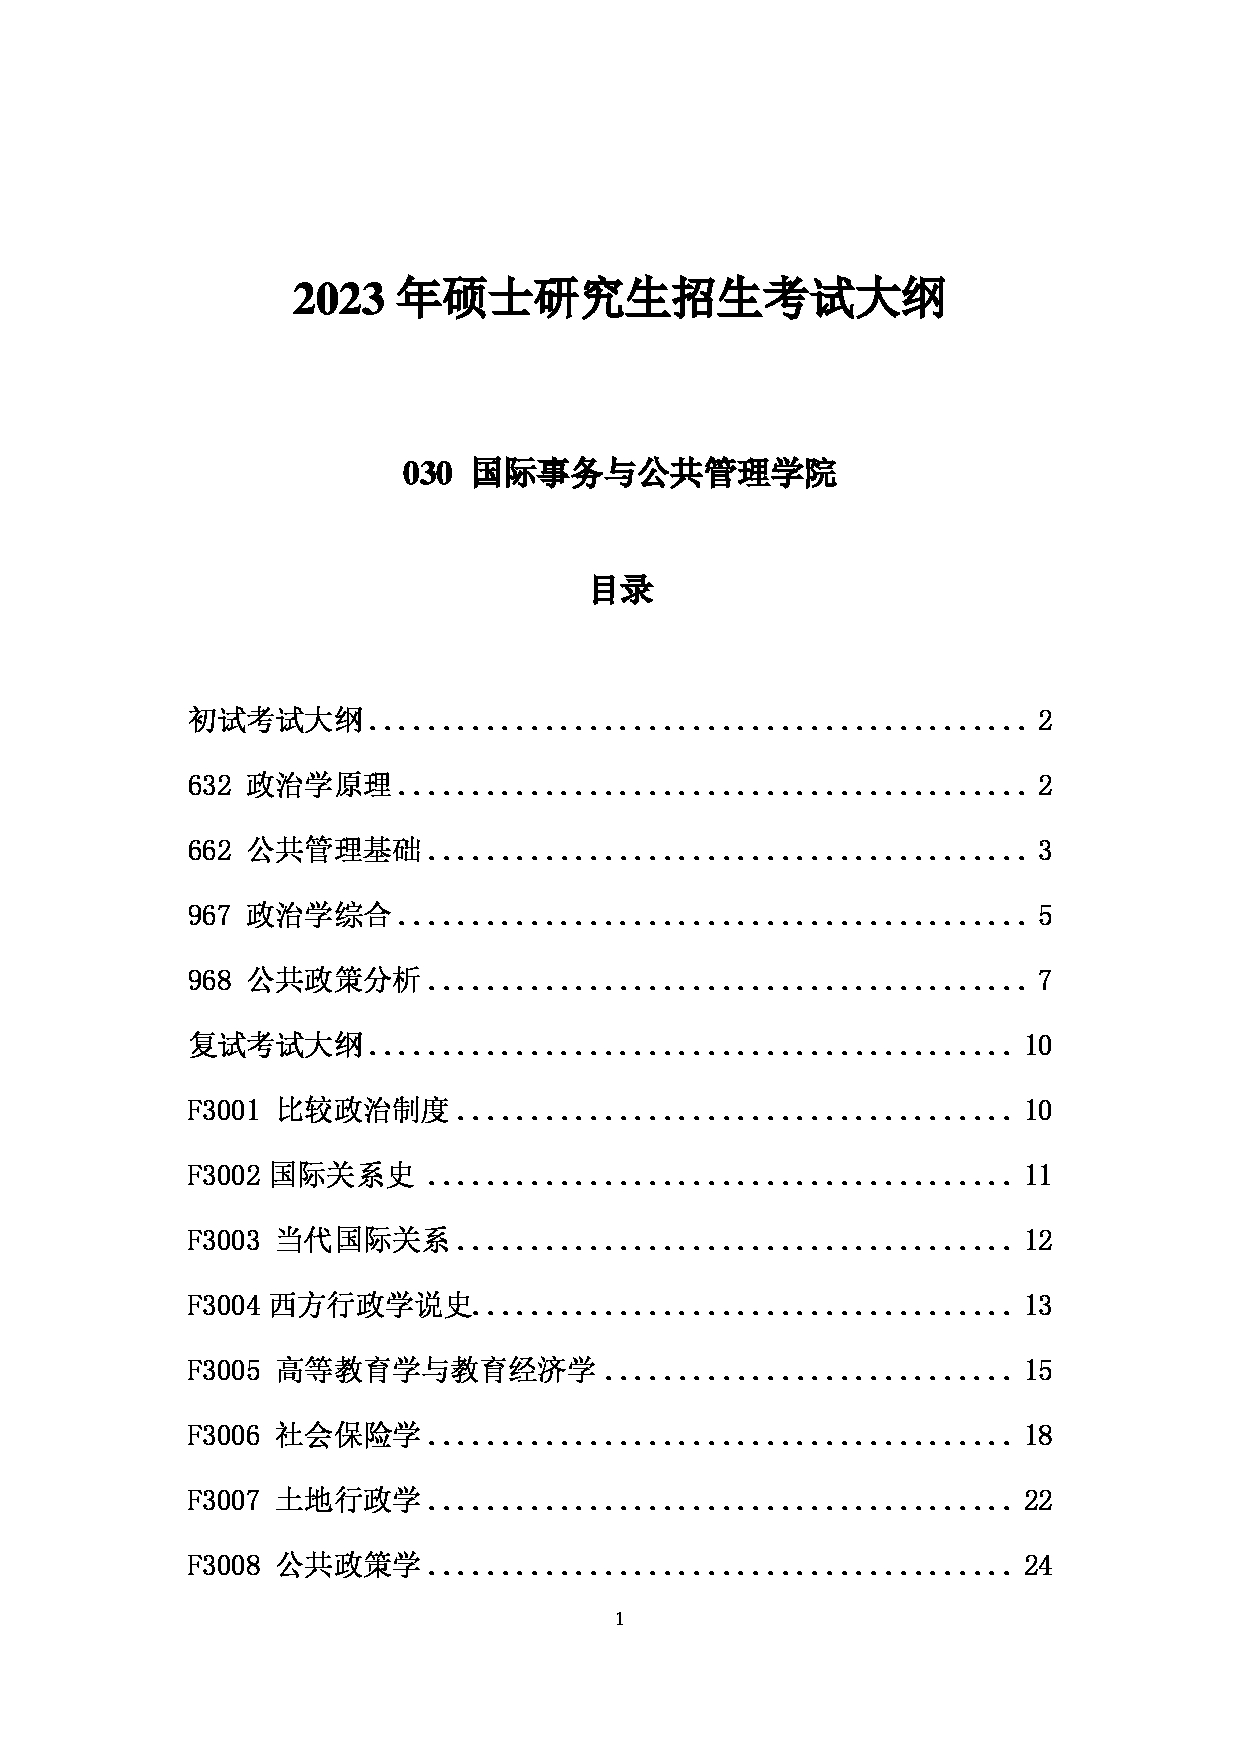 2023考研大纲：中国海洋大学2023年考研 030国际事务与公共管理学院 考试大纲第1页